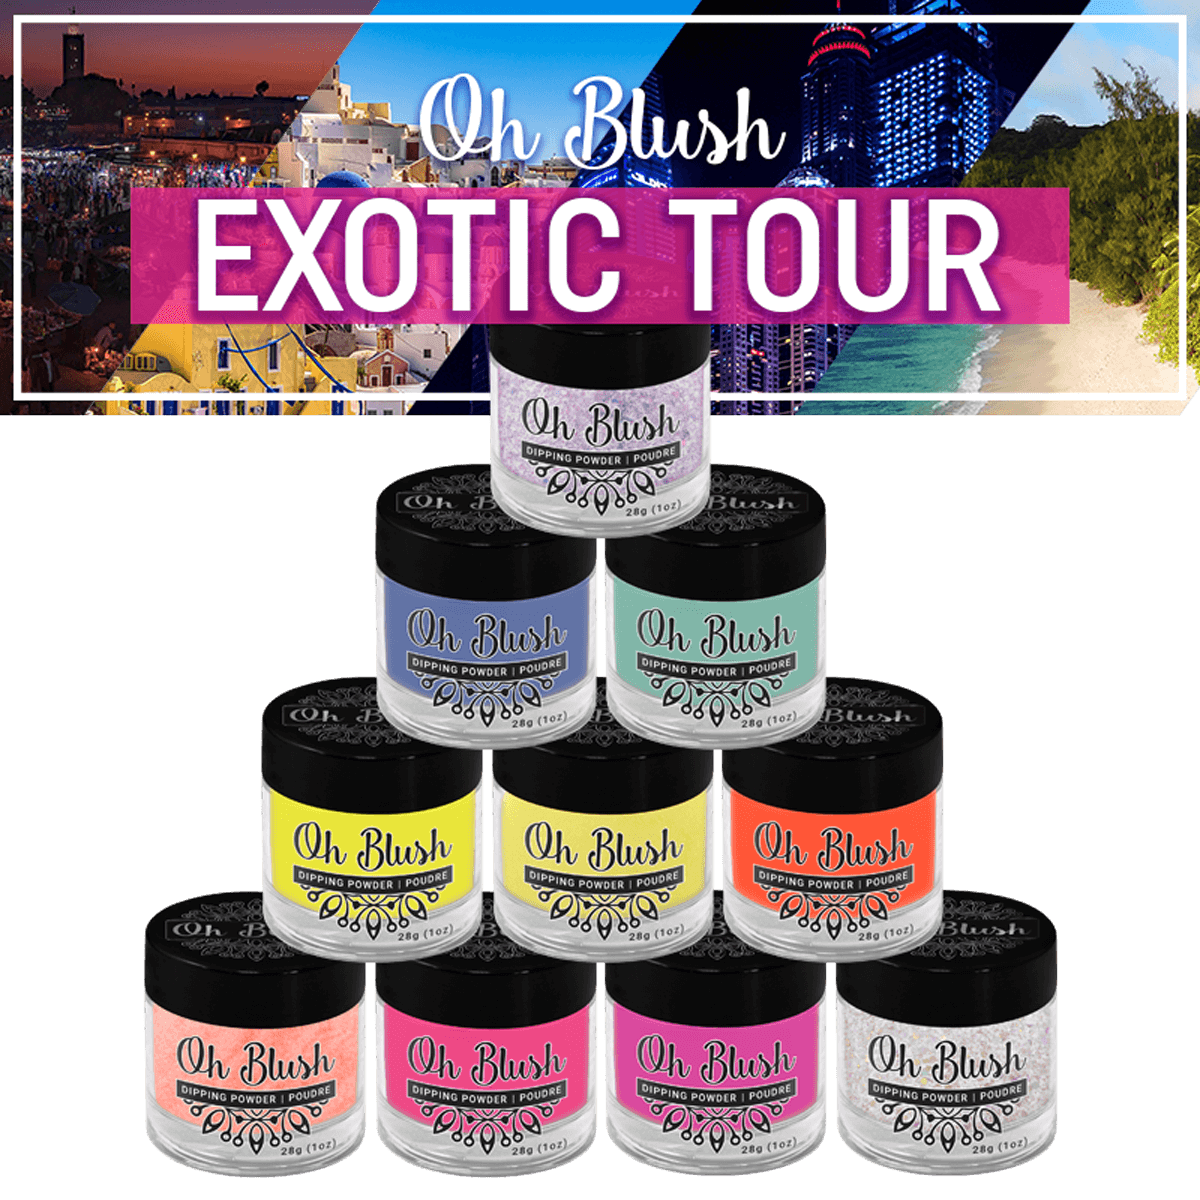 Oh Blush Poudre Collection Exotic Tour (10pcs)